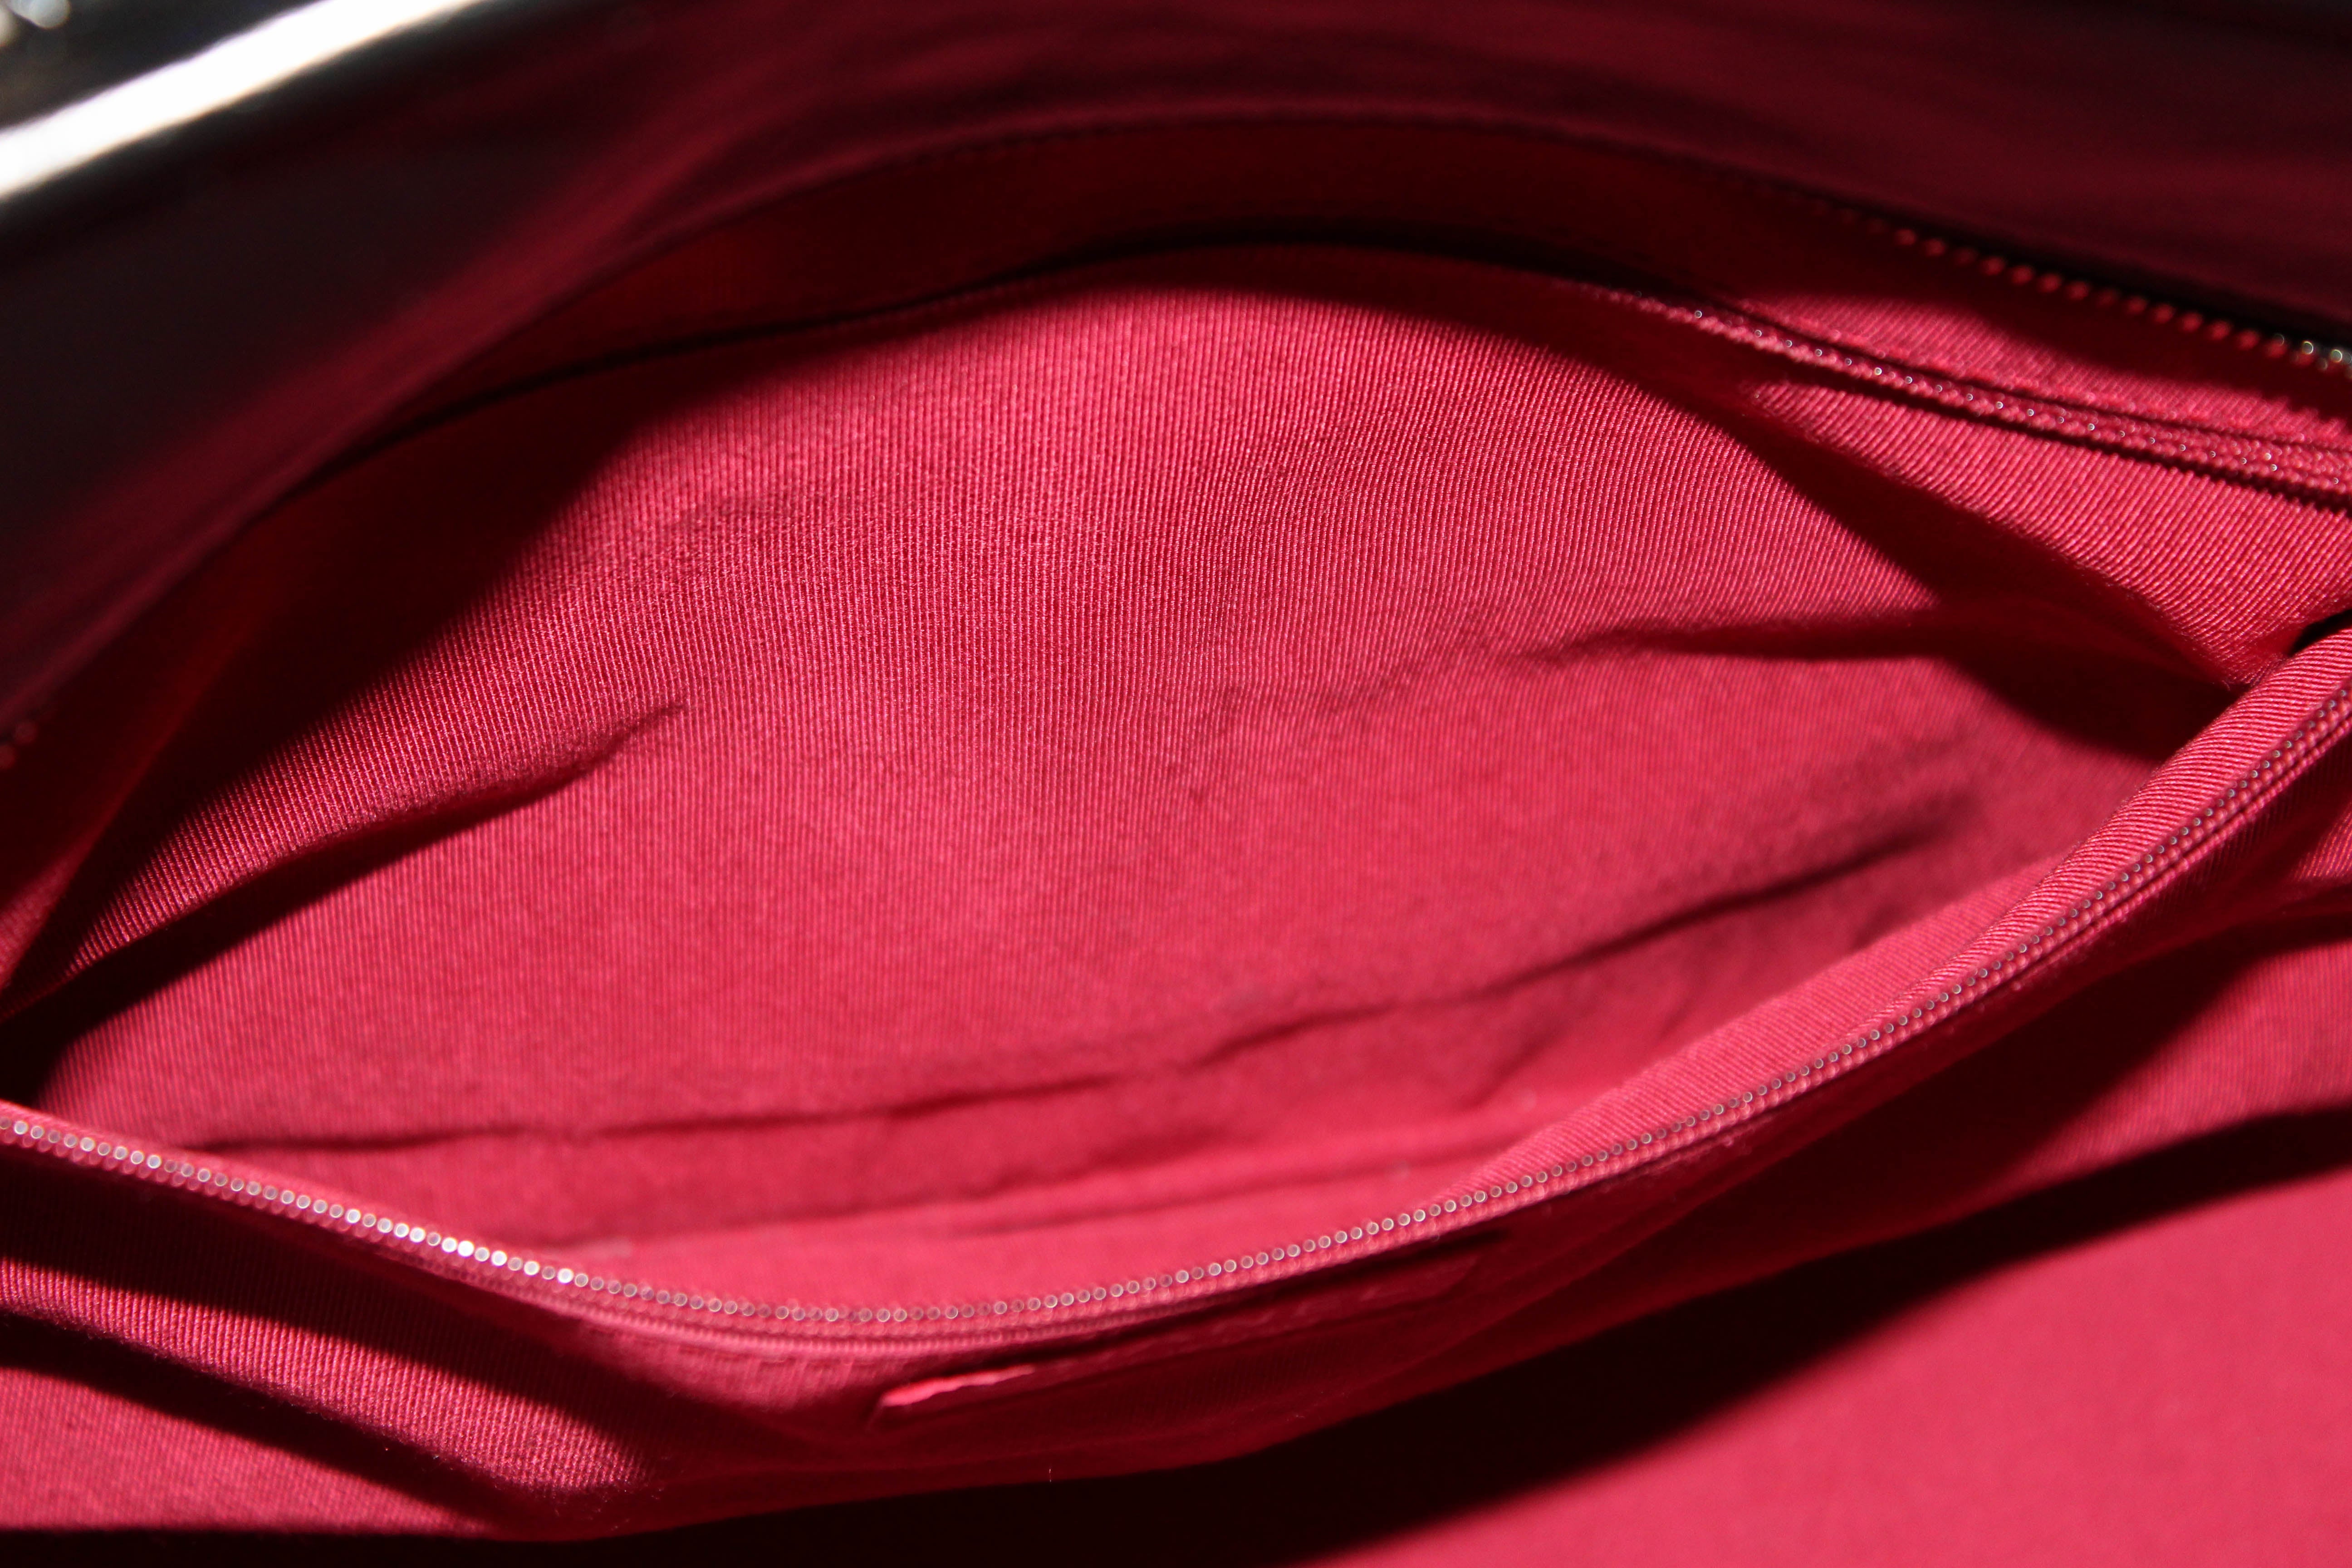 Chanel Gabrielle Medium Aged Calfskin Leather Shoulder Bag Pink